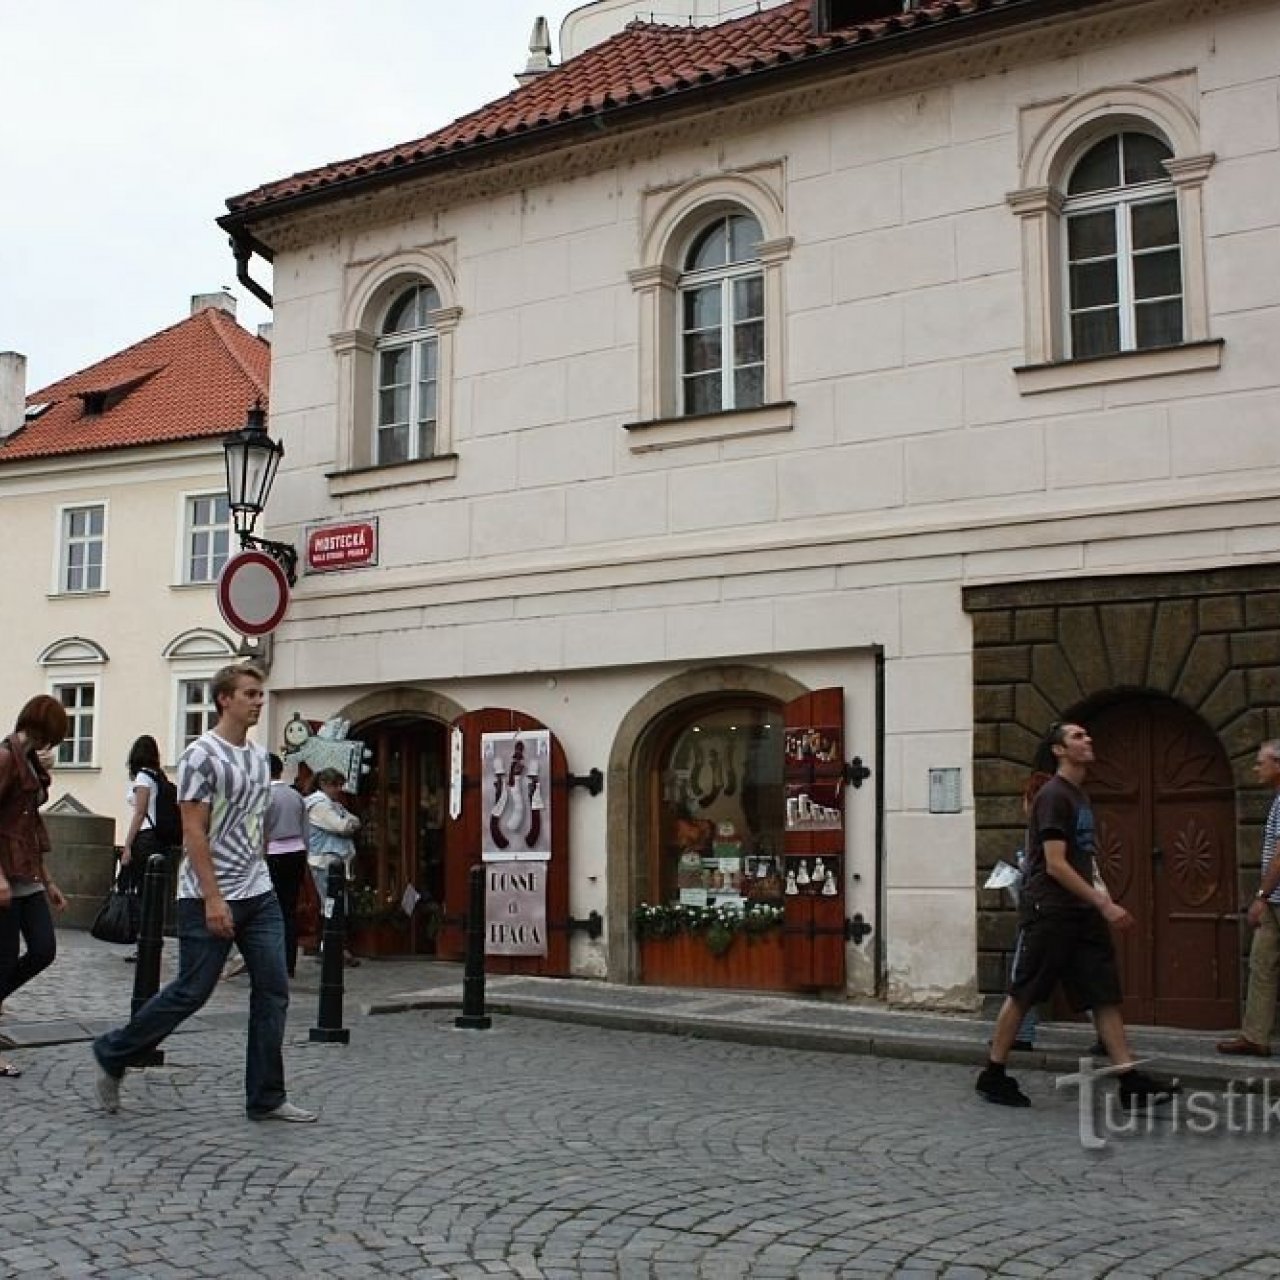 Praha - Mostecká ulice